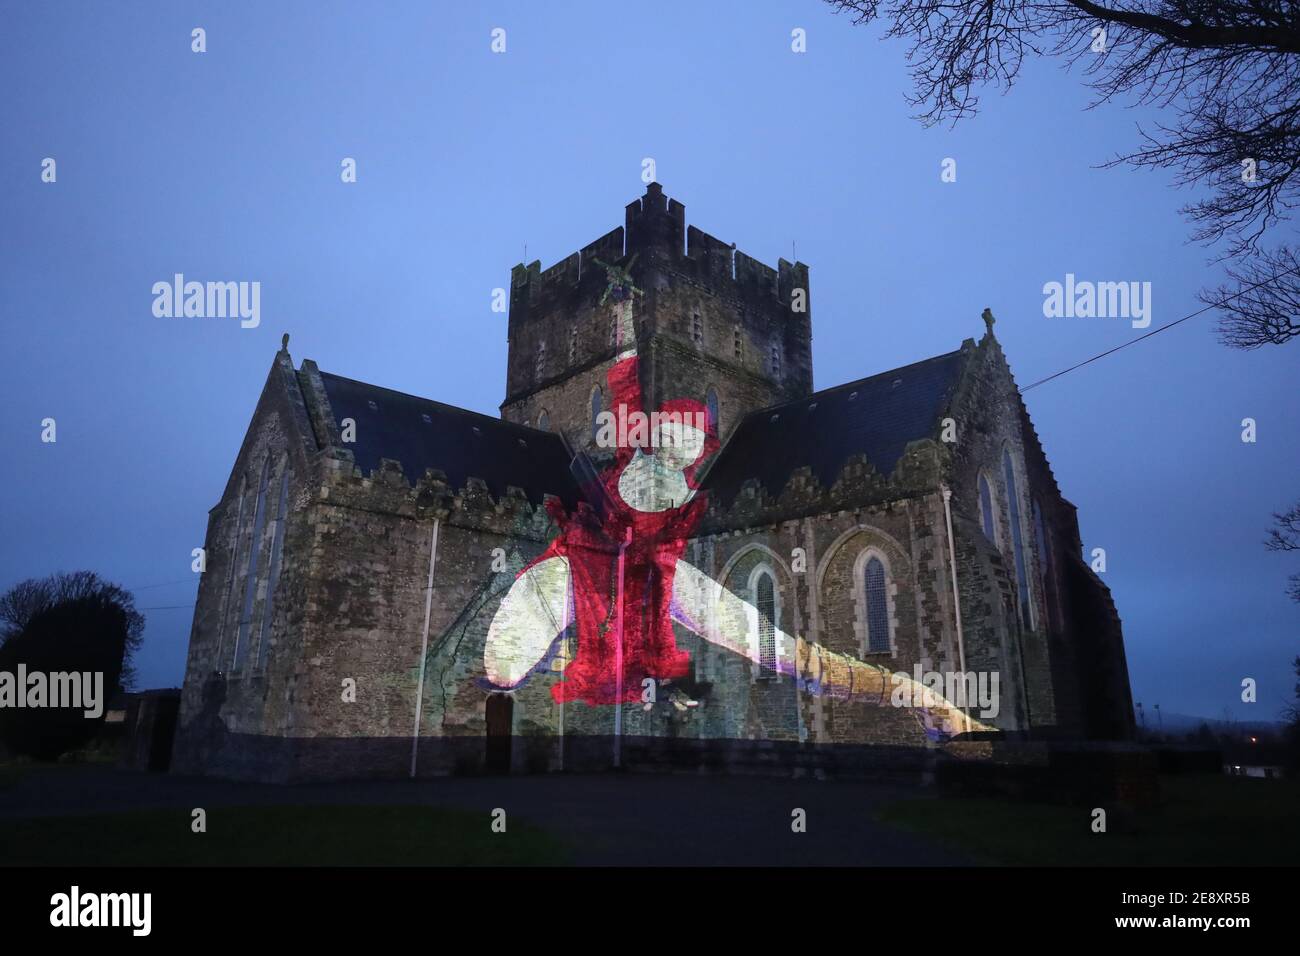 Eine Nonne in Rot mit einem Kruzifix, das im Rahmen der Herstory Light Show auf der St. Brigid's Cathedral, Kildare, am St. Brigid's Day projiziert wird, wenn Wahrzeichen in ganz Irland beleuchtet wurden, um Überlebende von Mutter- und Babyhäusern zu ehren, als Teil einer Veranstaltung zum St. Brigid's Day. Bilddatum: Montag, 1. Februar 2021. Stockfoto